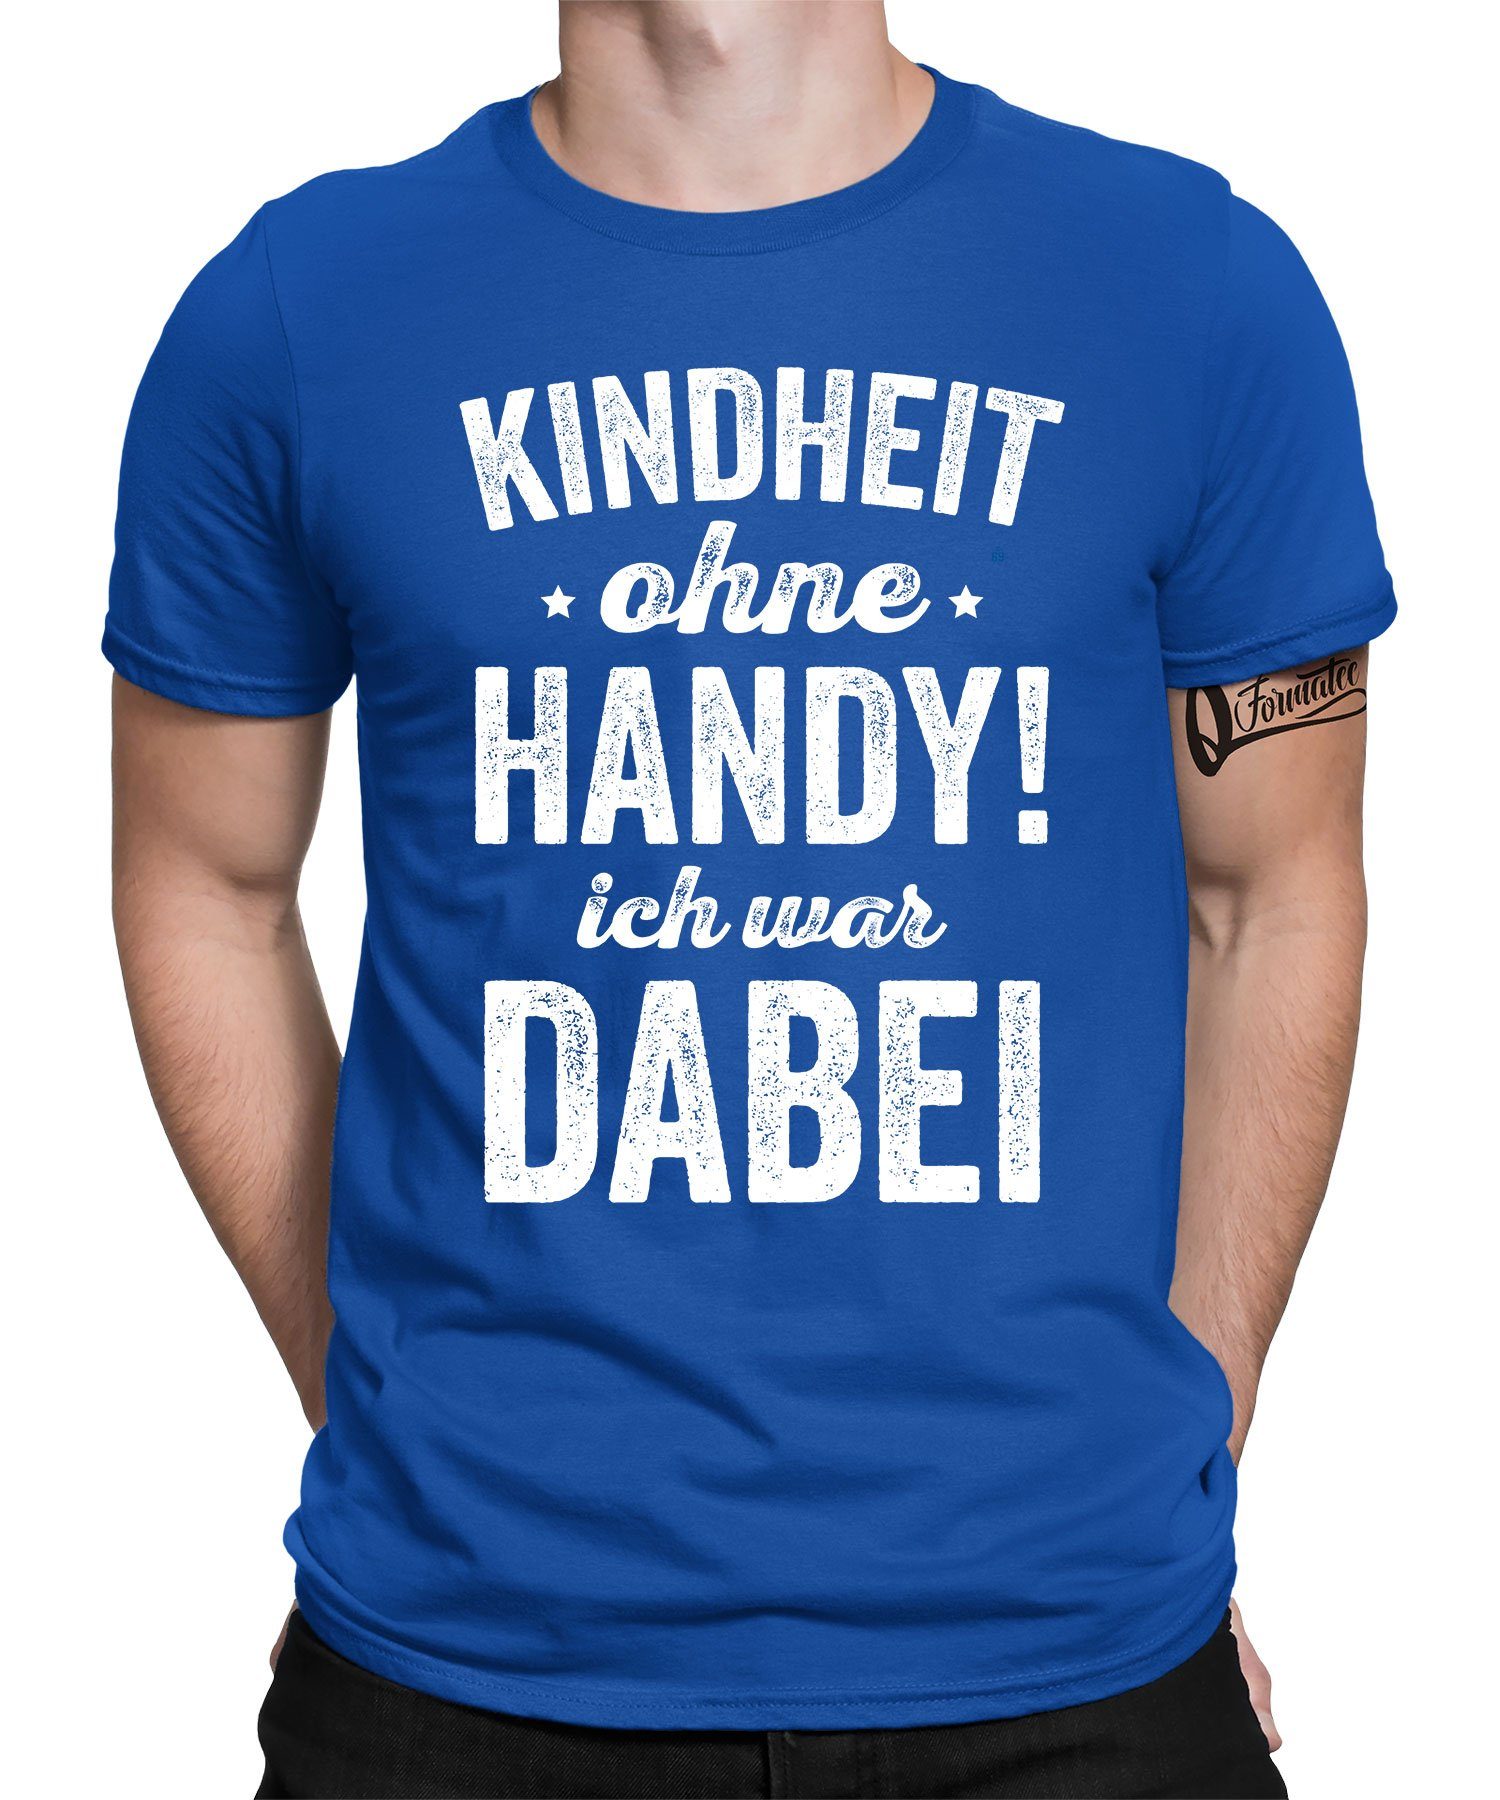 Quattro Formatee Kurzarmshirt Kindheit ohne Handy! - Lustiger Spruch Statement Herren T-Shirt (1-tlg) Blau